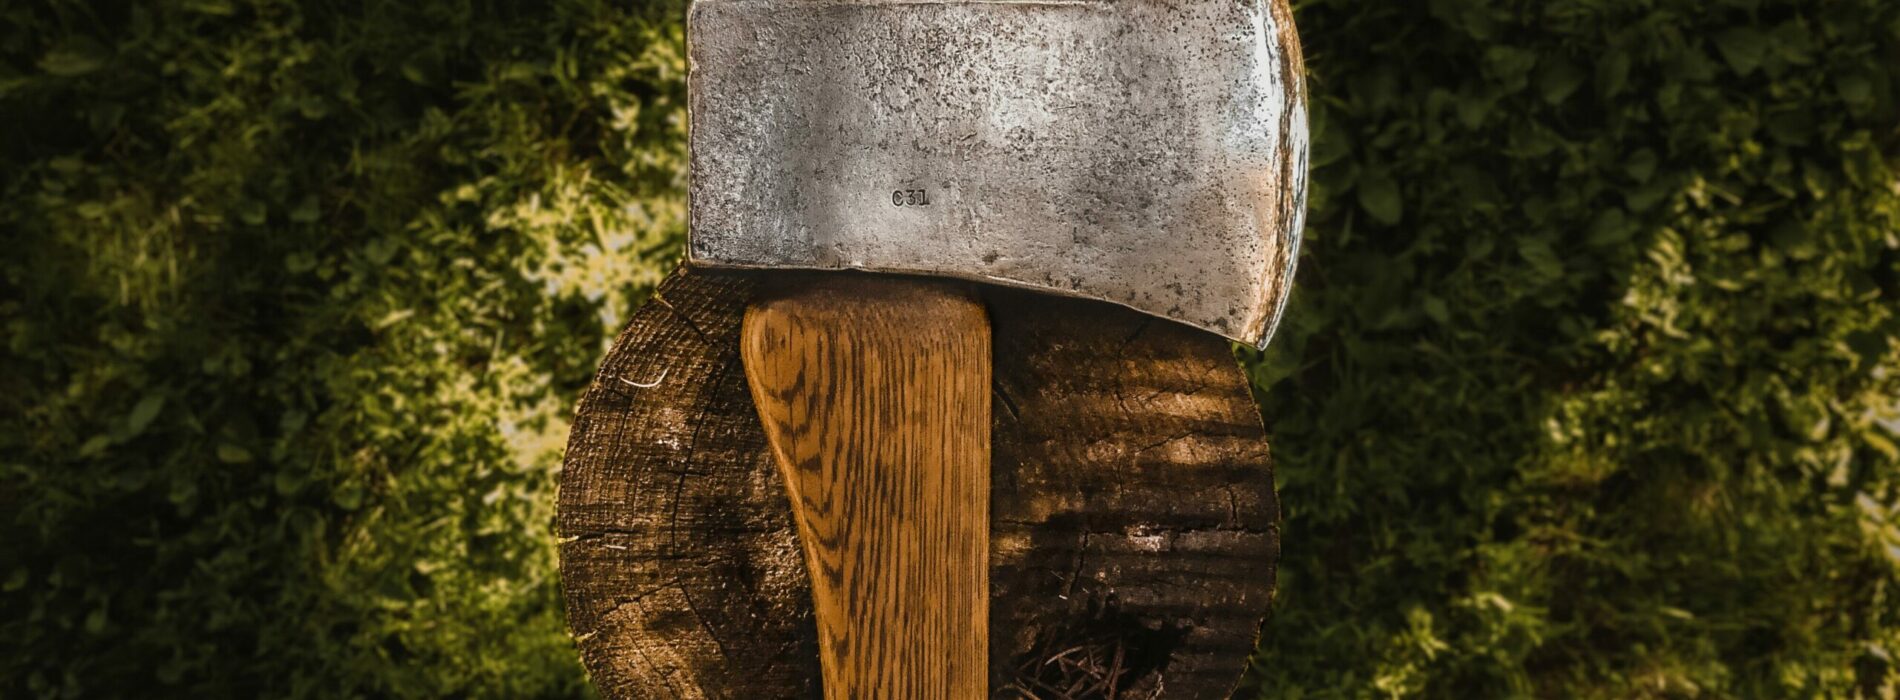 Jak wybrać właściwą siekierę do rąbania drewna? Jak bezpiecznie rąbać drewno?